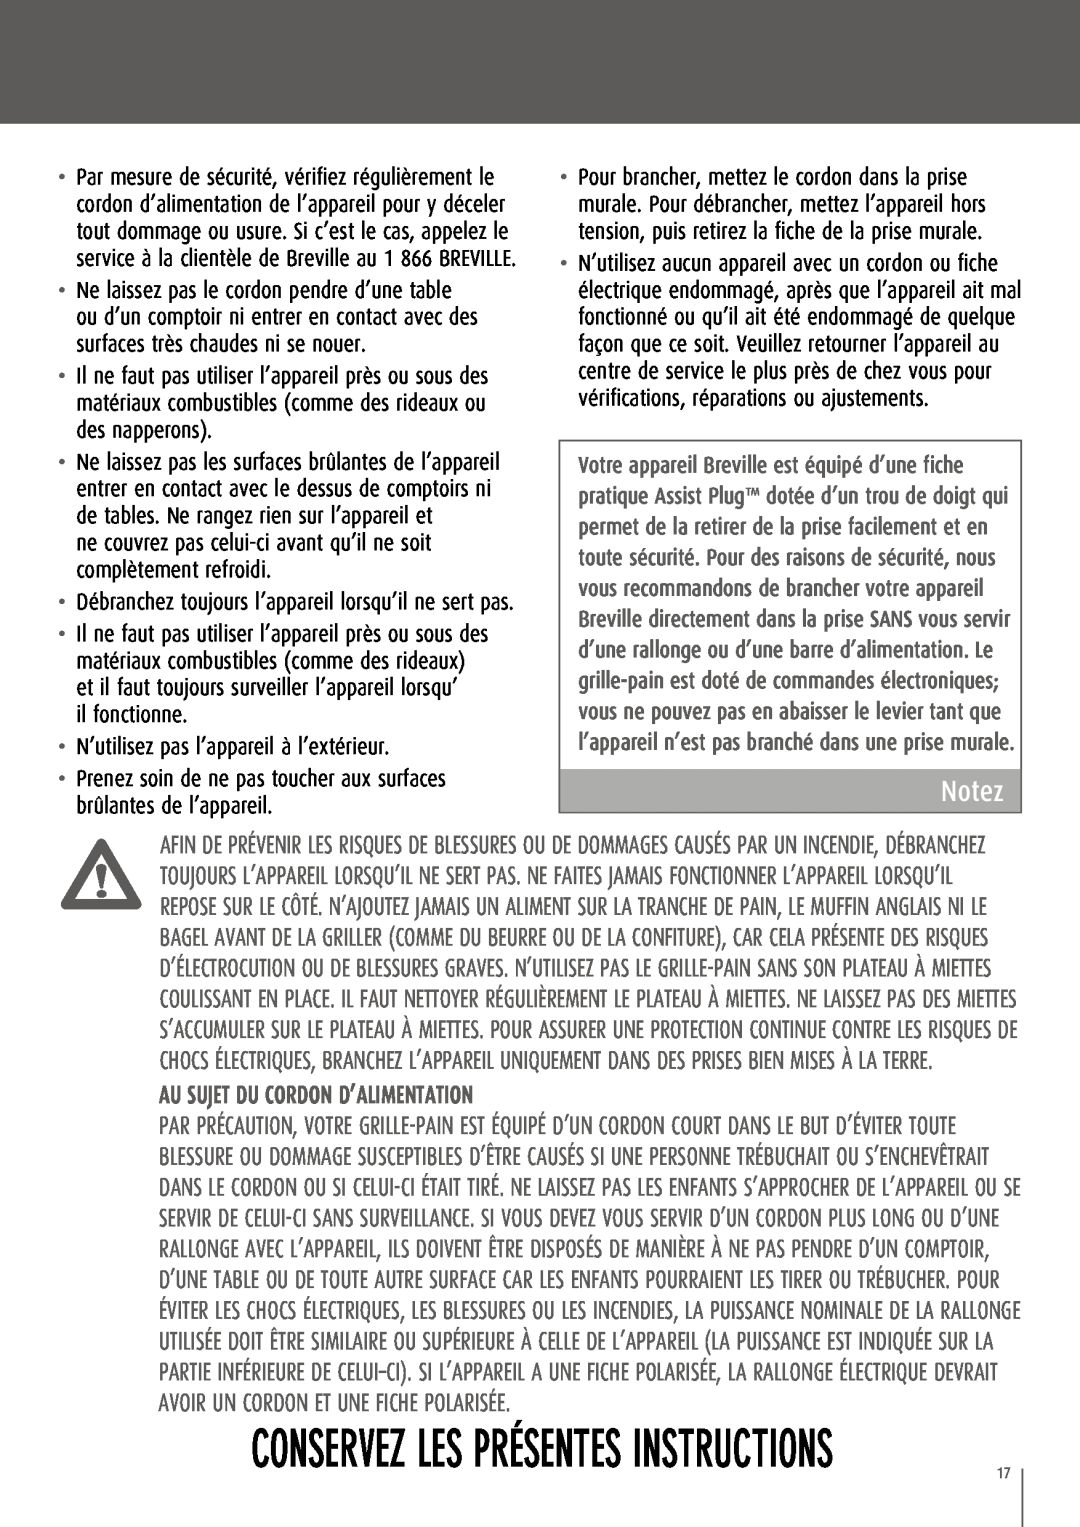 Breville CT75XL/A manual Conservez Les Présentes Instructions, Notez, Au sujet du cordon d’alimentation 